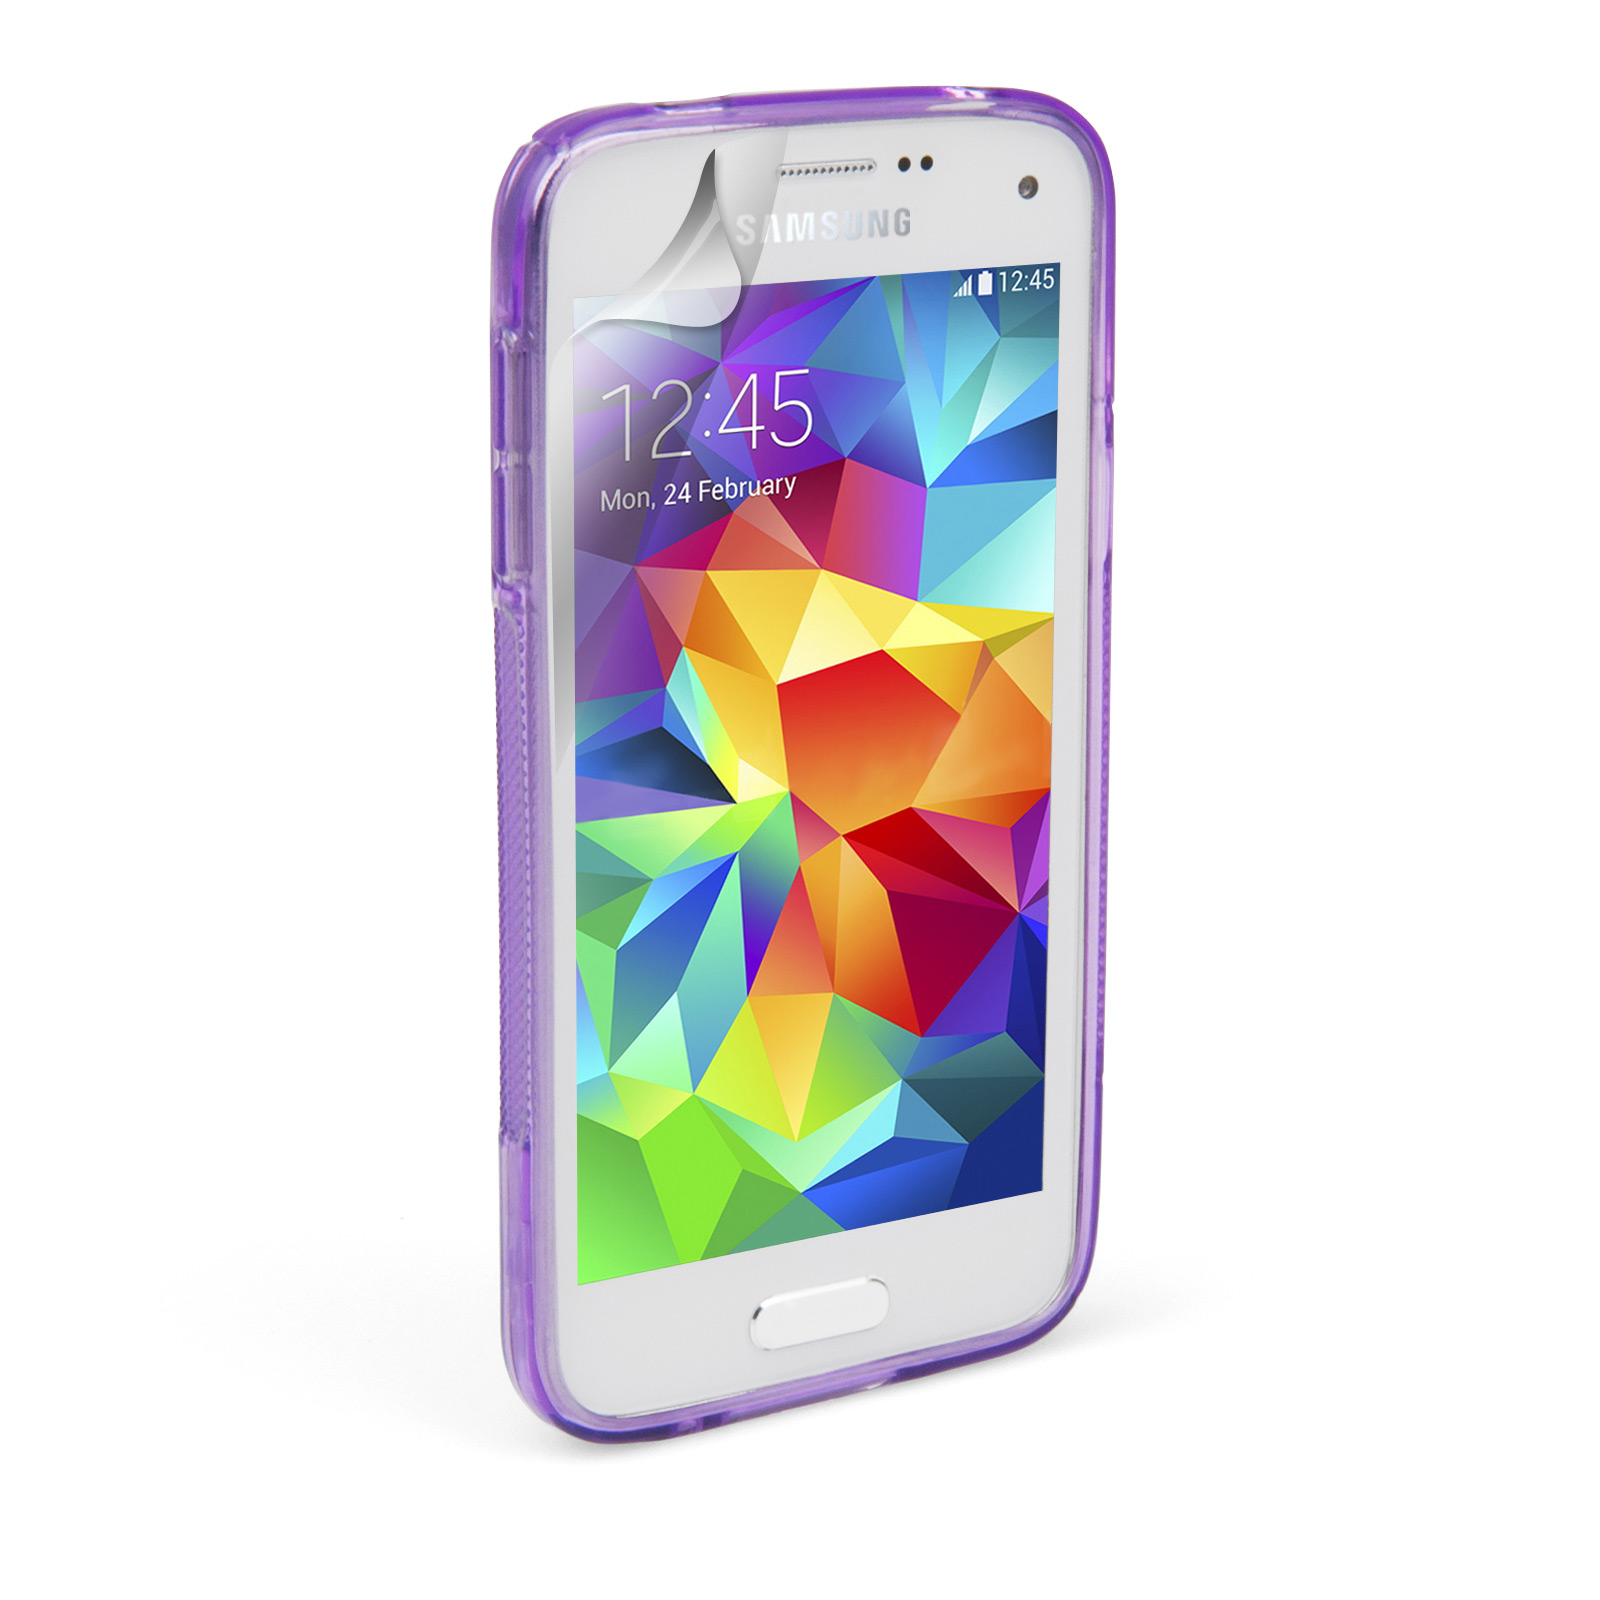 Caseflex Samsung Galaxy S5 Mini Silicone Gel S-Line Case - Purple